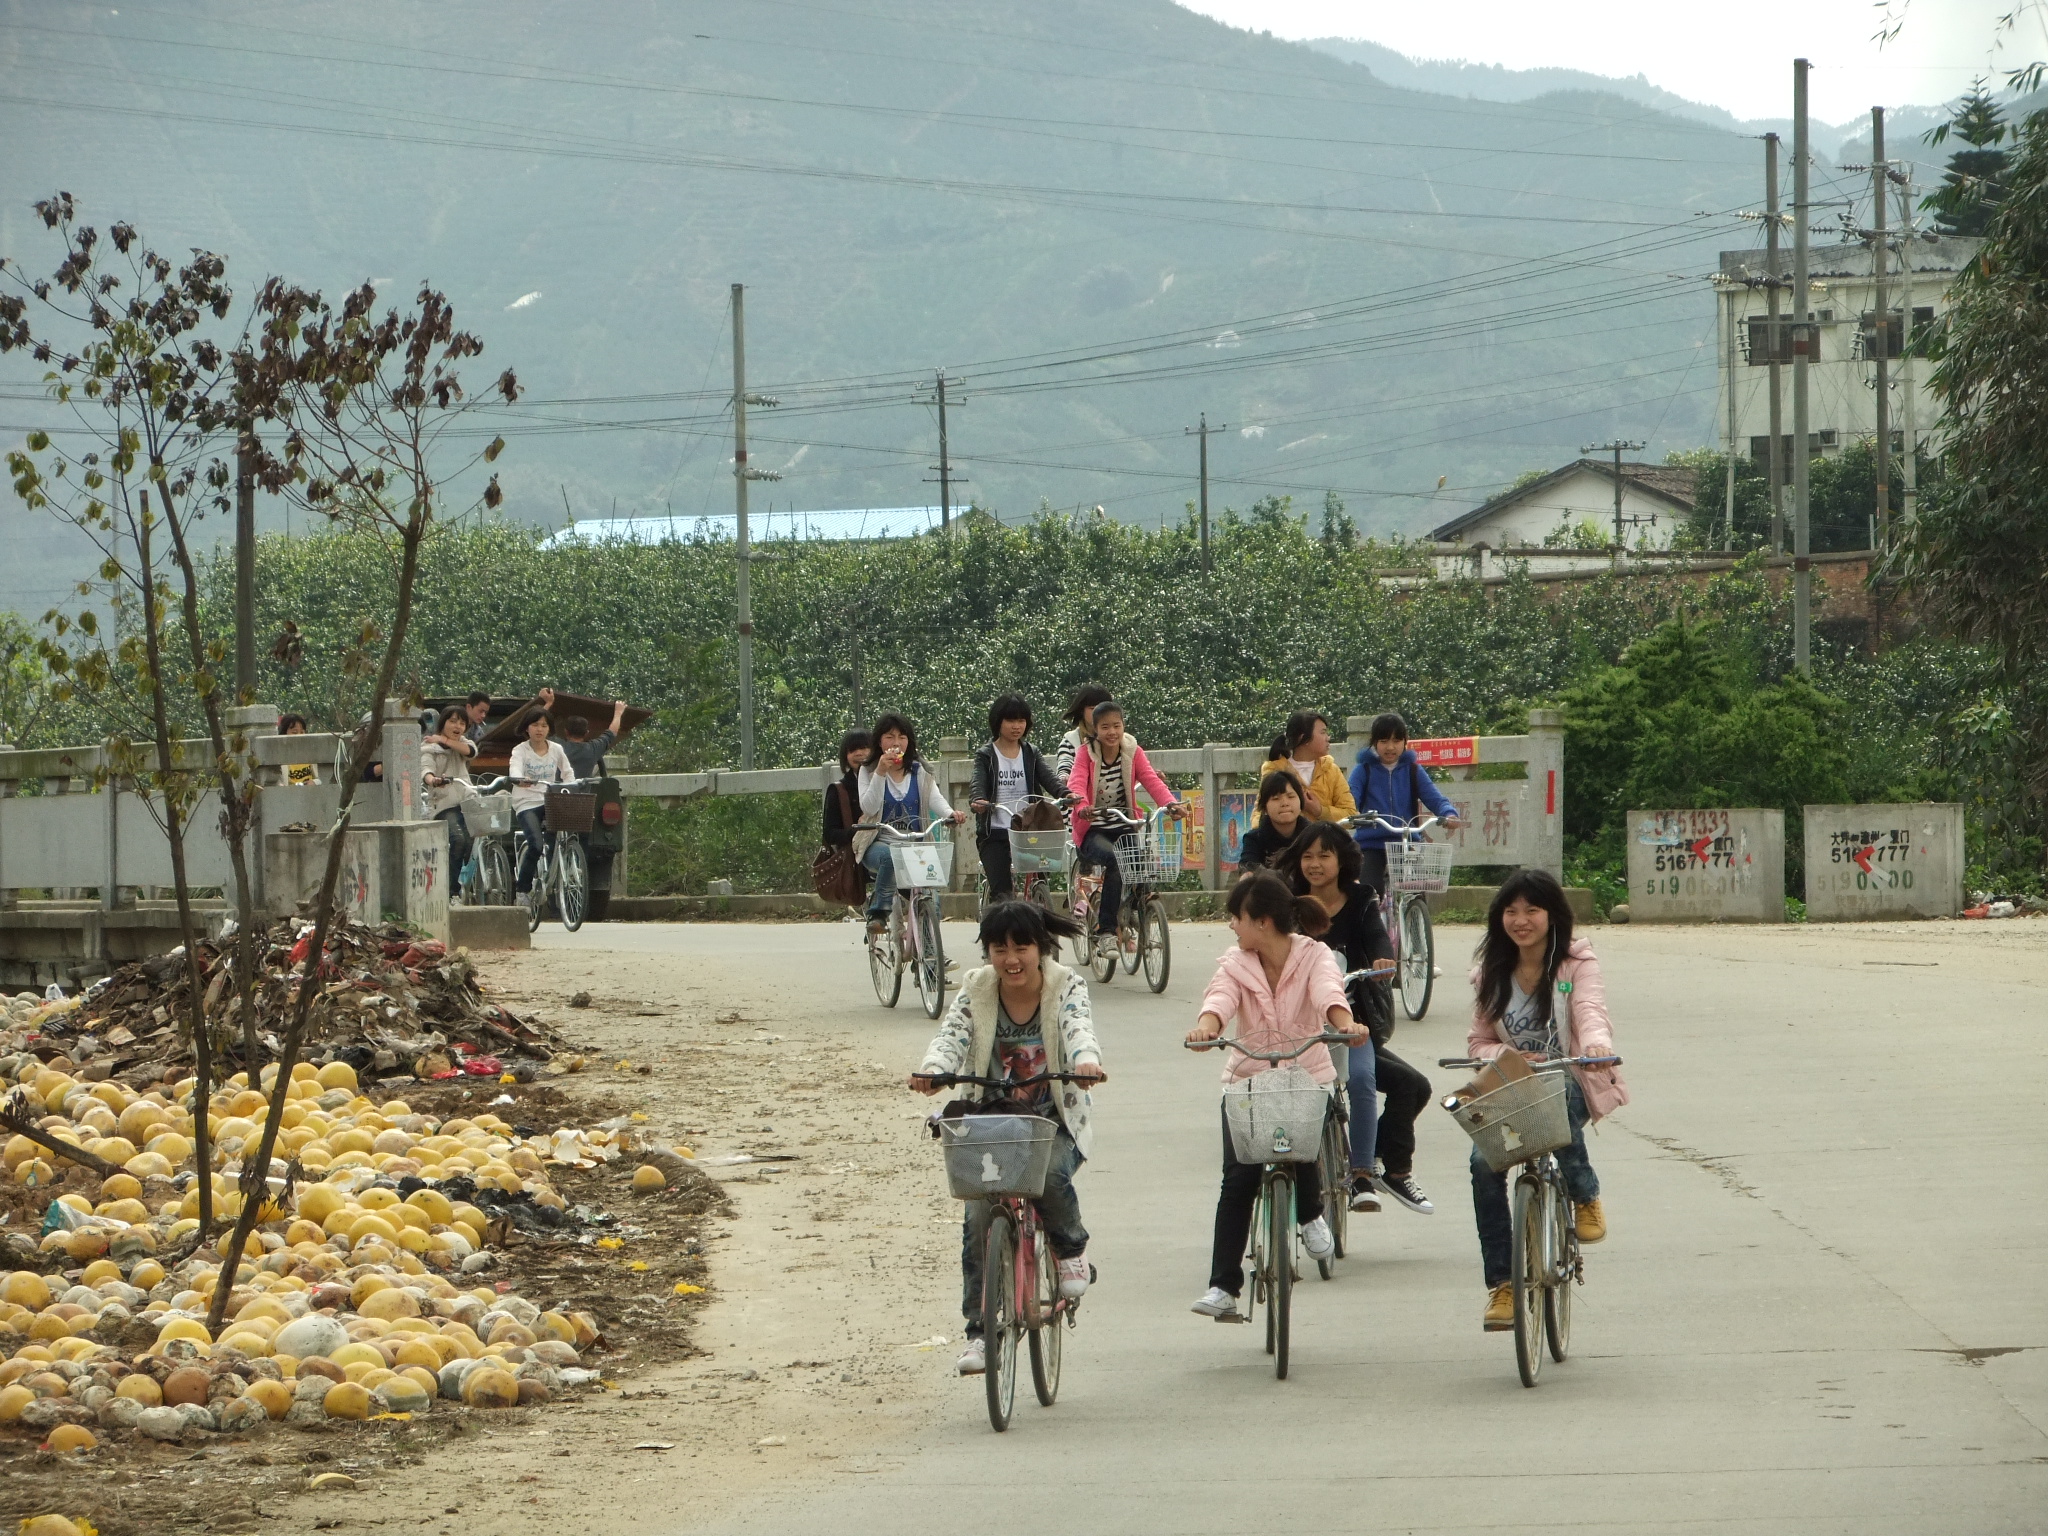 Dapingqiao - schoolchildren riding home - DSCF4120